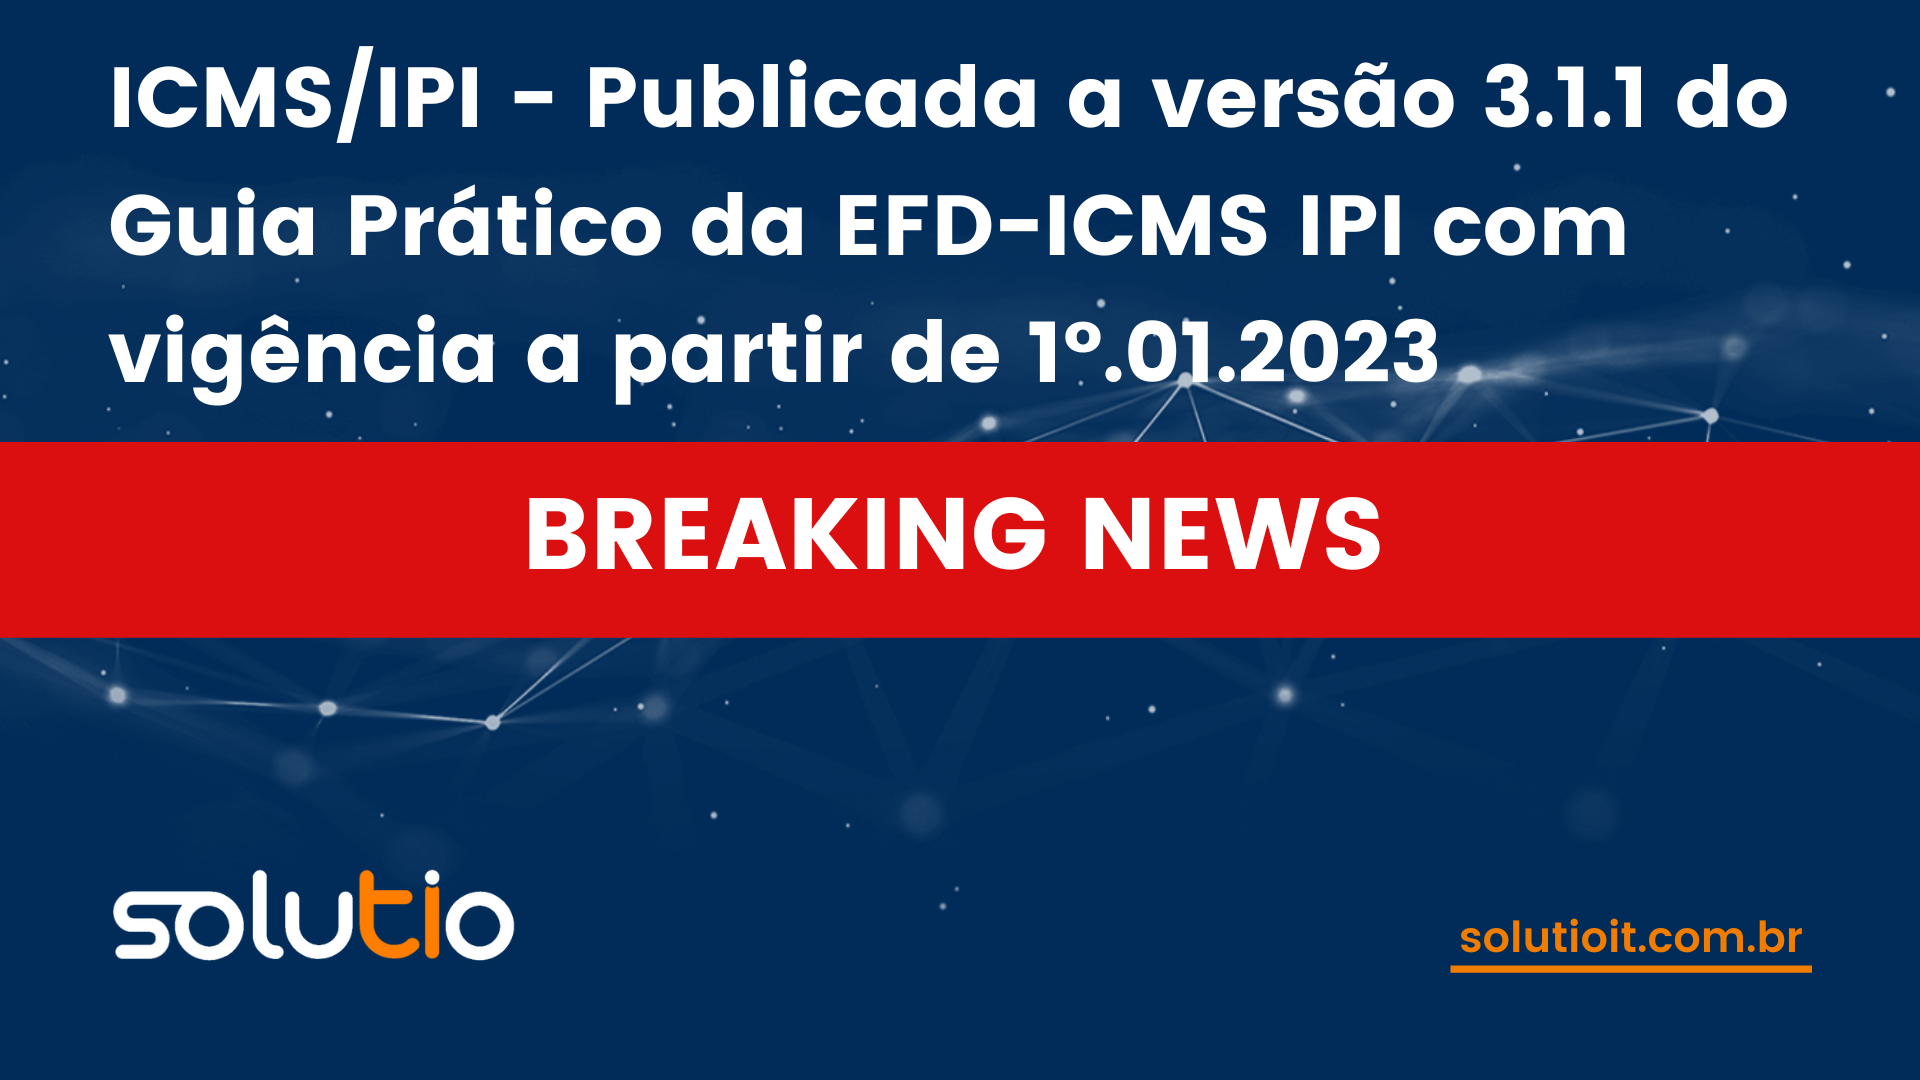 ICMS/IPI - Publicada a versão 3.1.1 do Guia Prático da EFD-ICMS IPI com vigência a partir de 1º.01.2023